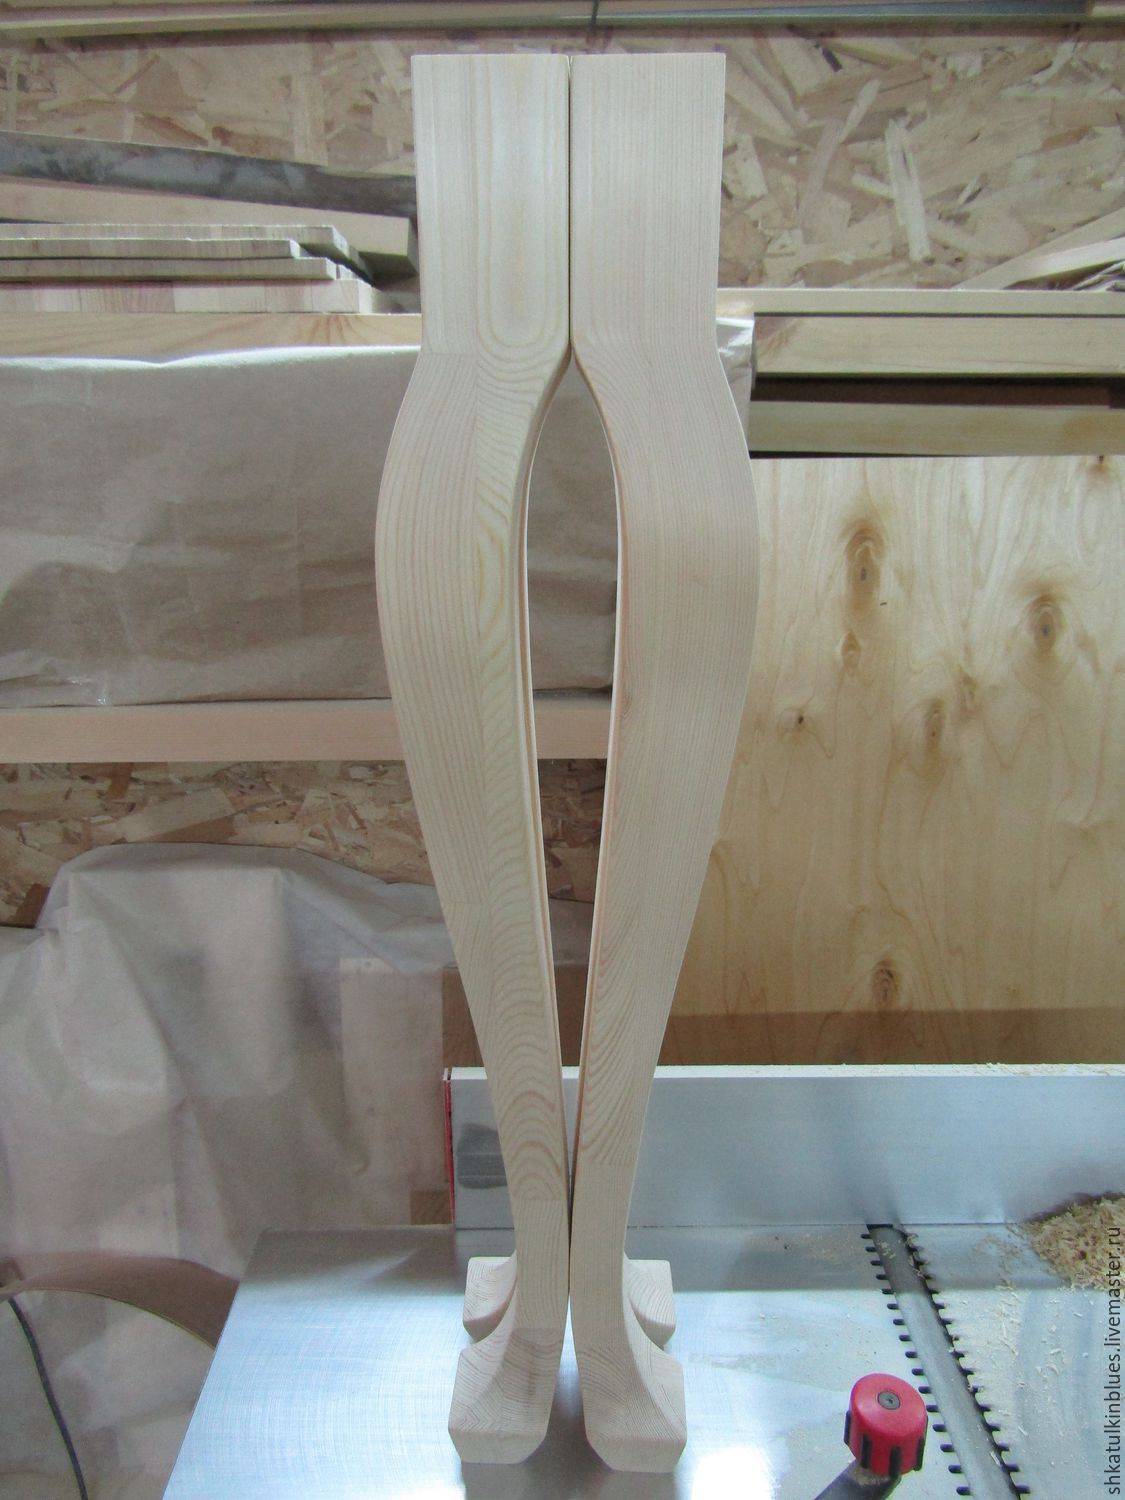 Соединение деревянных деталей: ящичное, стыковое, угловое, типа шип-паз и ласточкин хвост